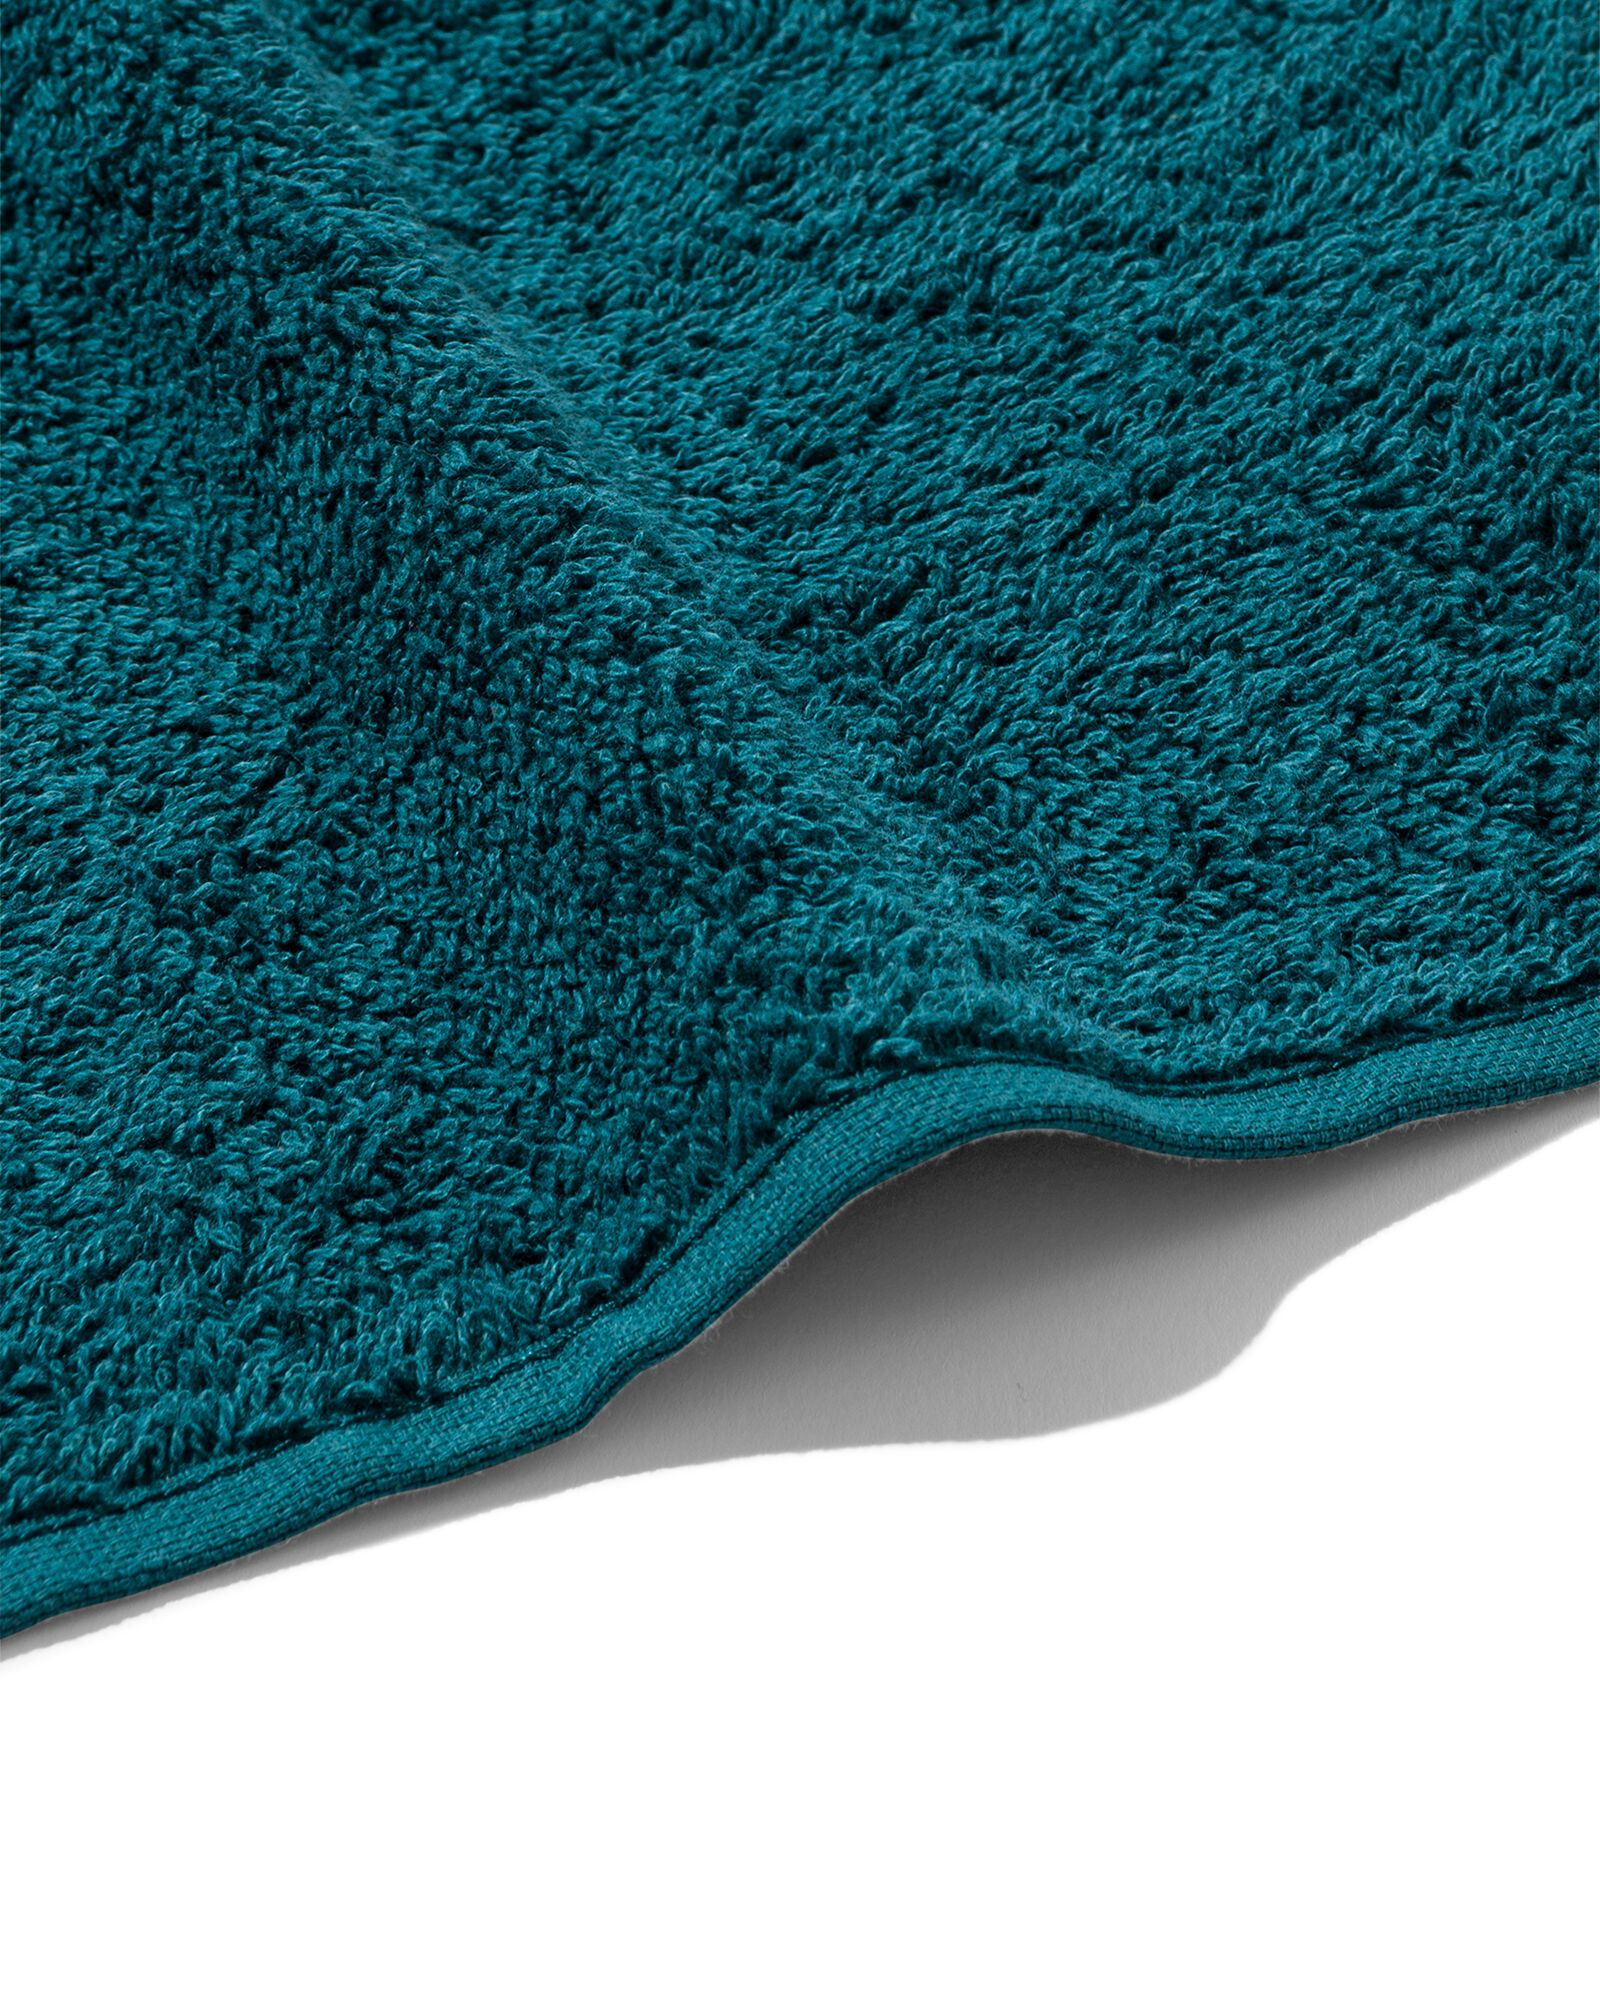 handdoek - zware kwaliteit - donkergroen donkergroen gastendoekje - 5220012 - HEMA